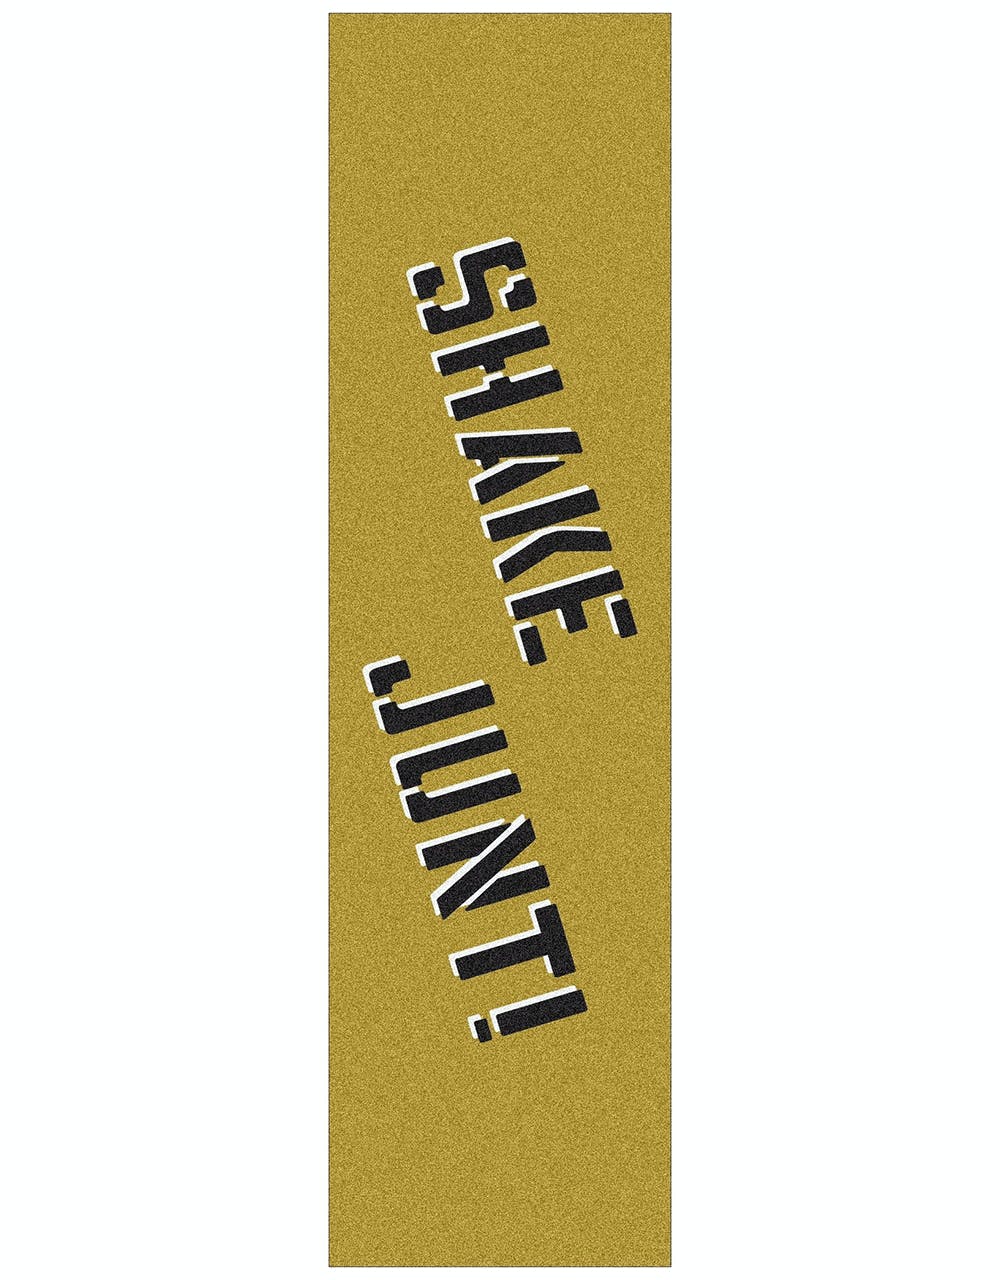 Shake Junt Sprayed Logo Grip Tape Sheet - Gold/Black